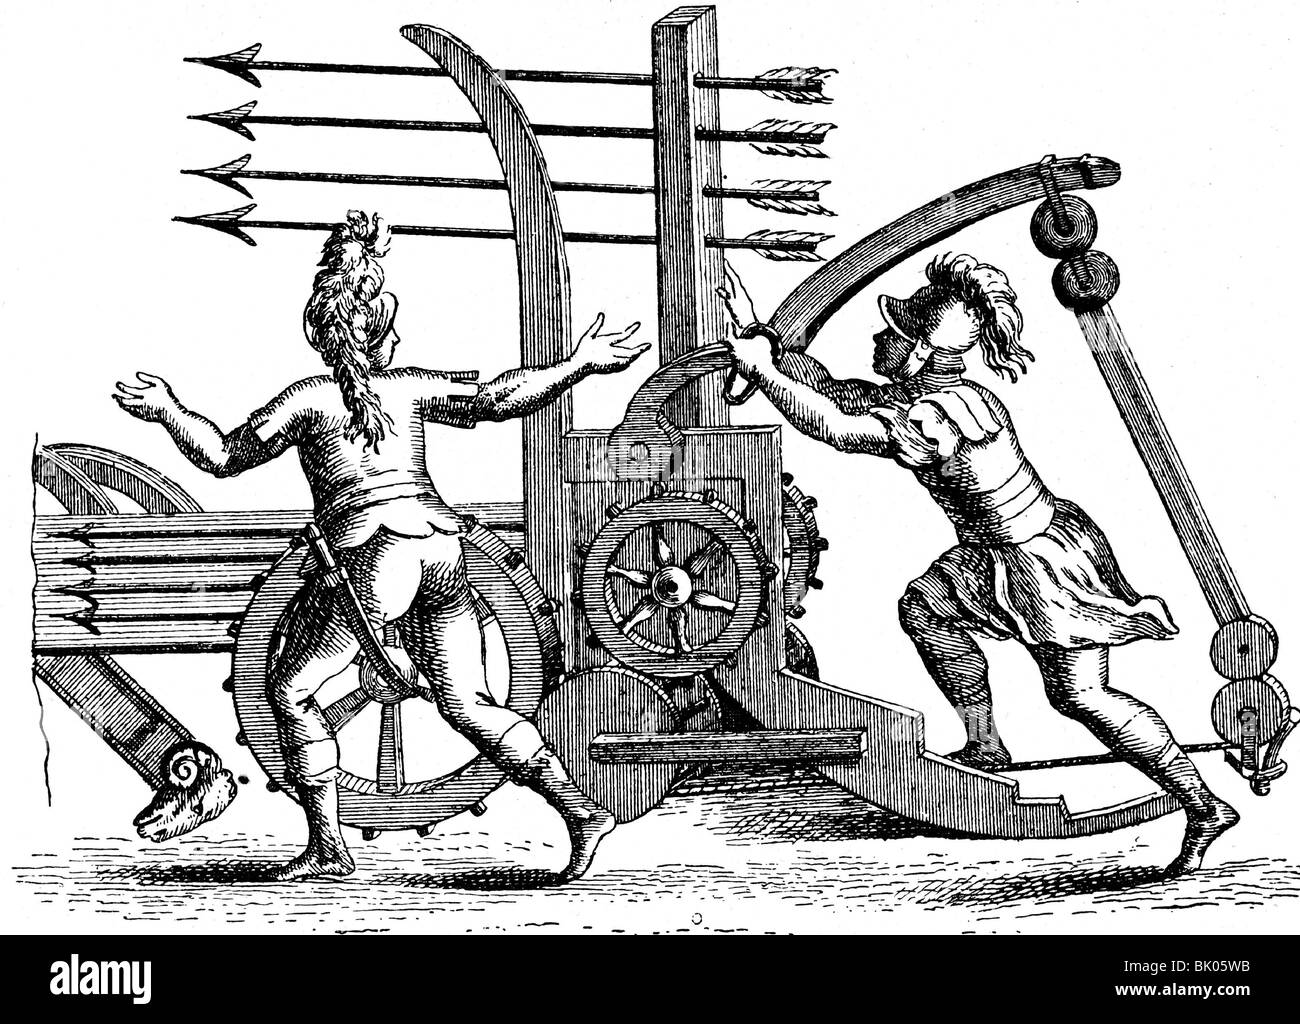 Militaire, ancien monde, canons, catapulte romaine de dart, gravure de 'Encyclopedie' par Denise Diderot et Jean le rond d' Alembert, 1756, Banque D'Images